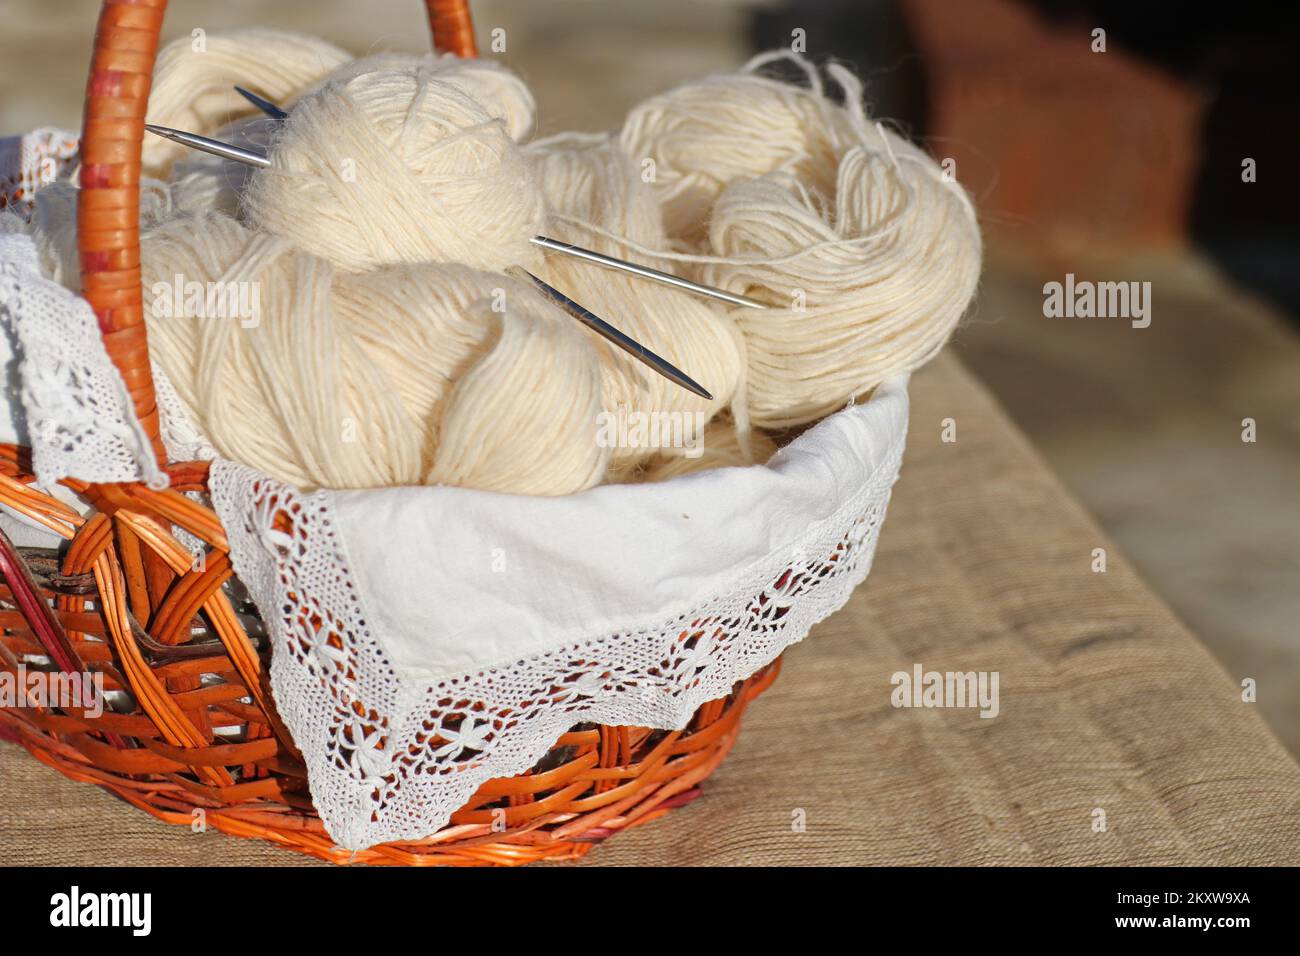 Il cestello contiene fili per maglieria, aghi per maglieria e una sfera di filo. Foto Stock